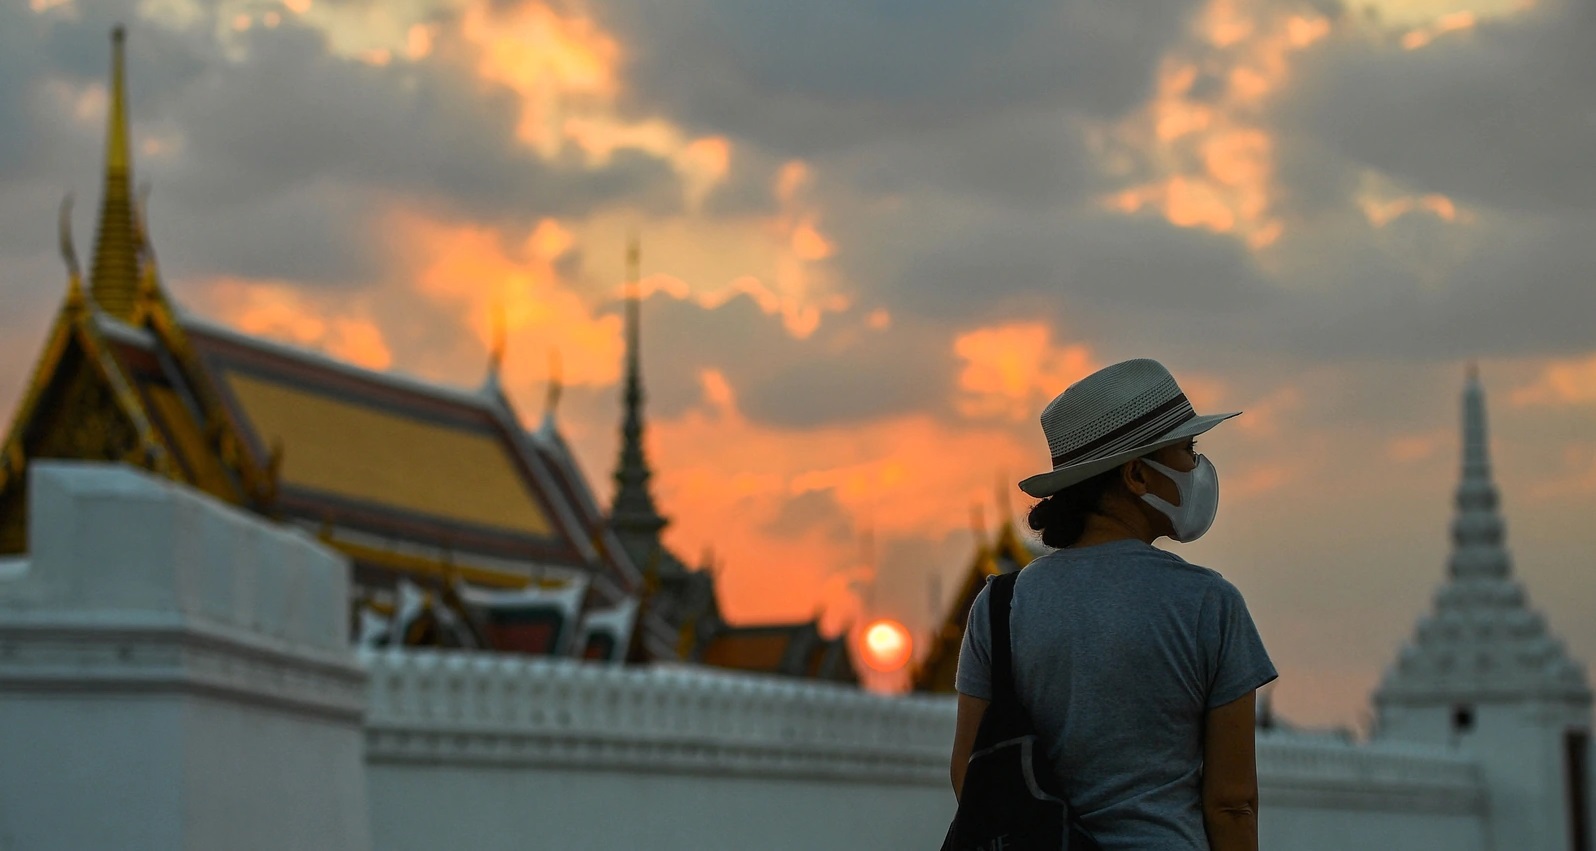 سفر به تایلند در شرایط کرونا